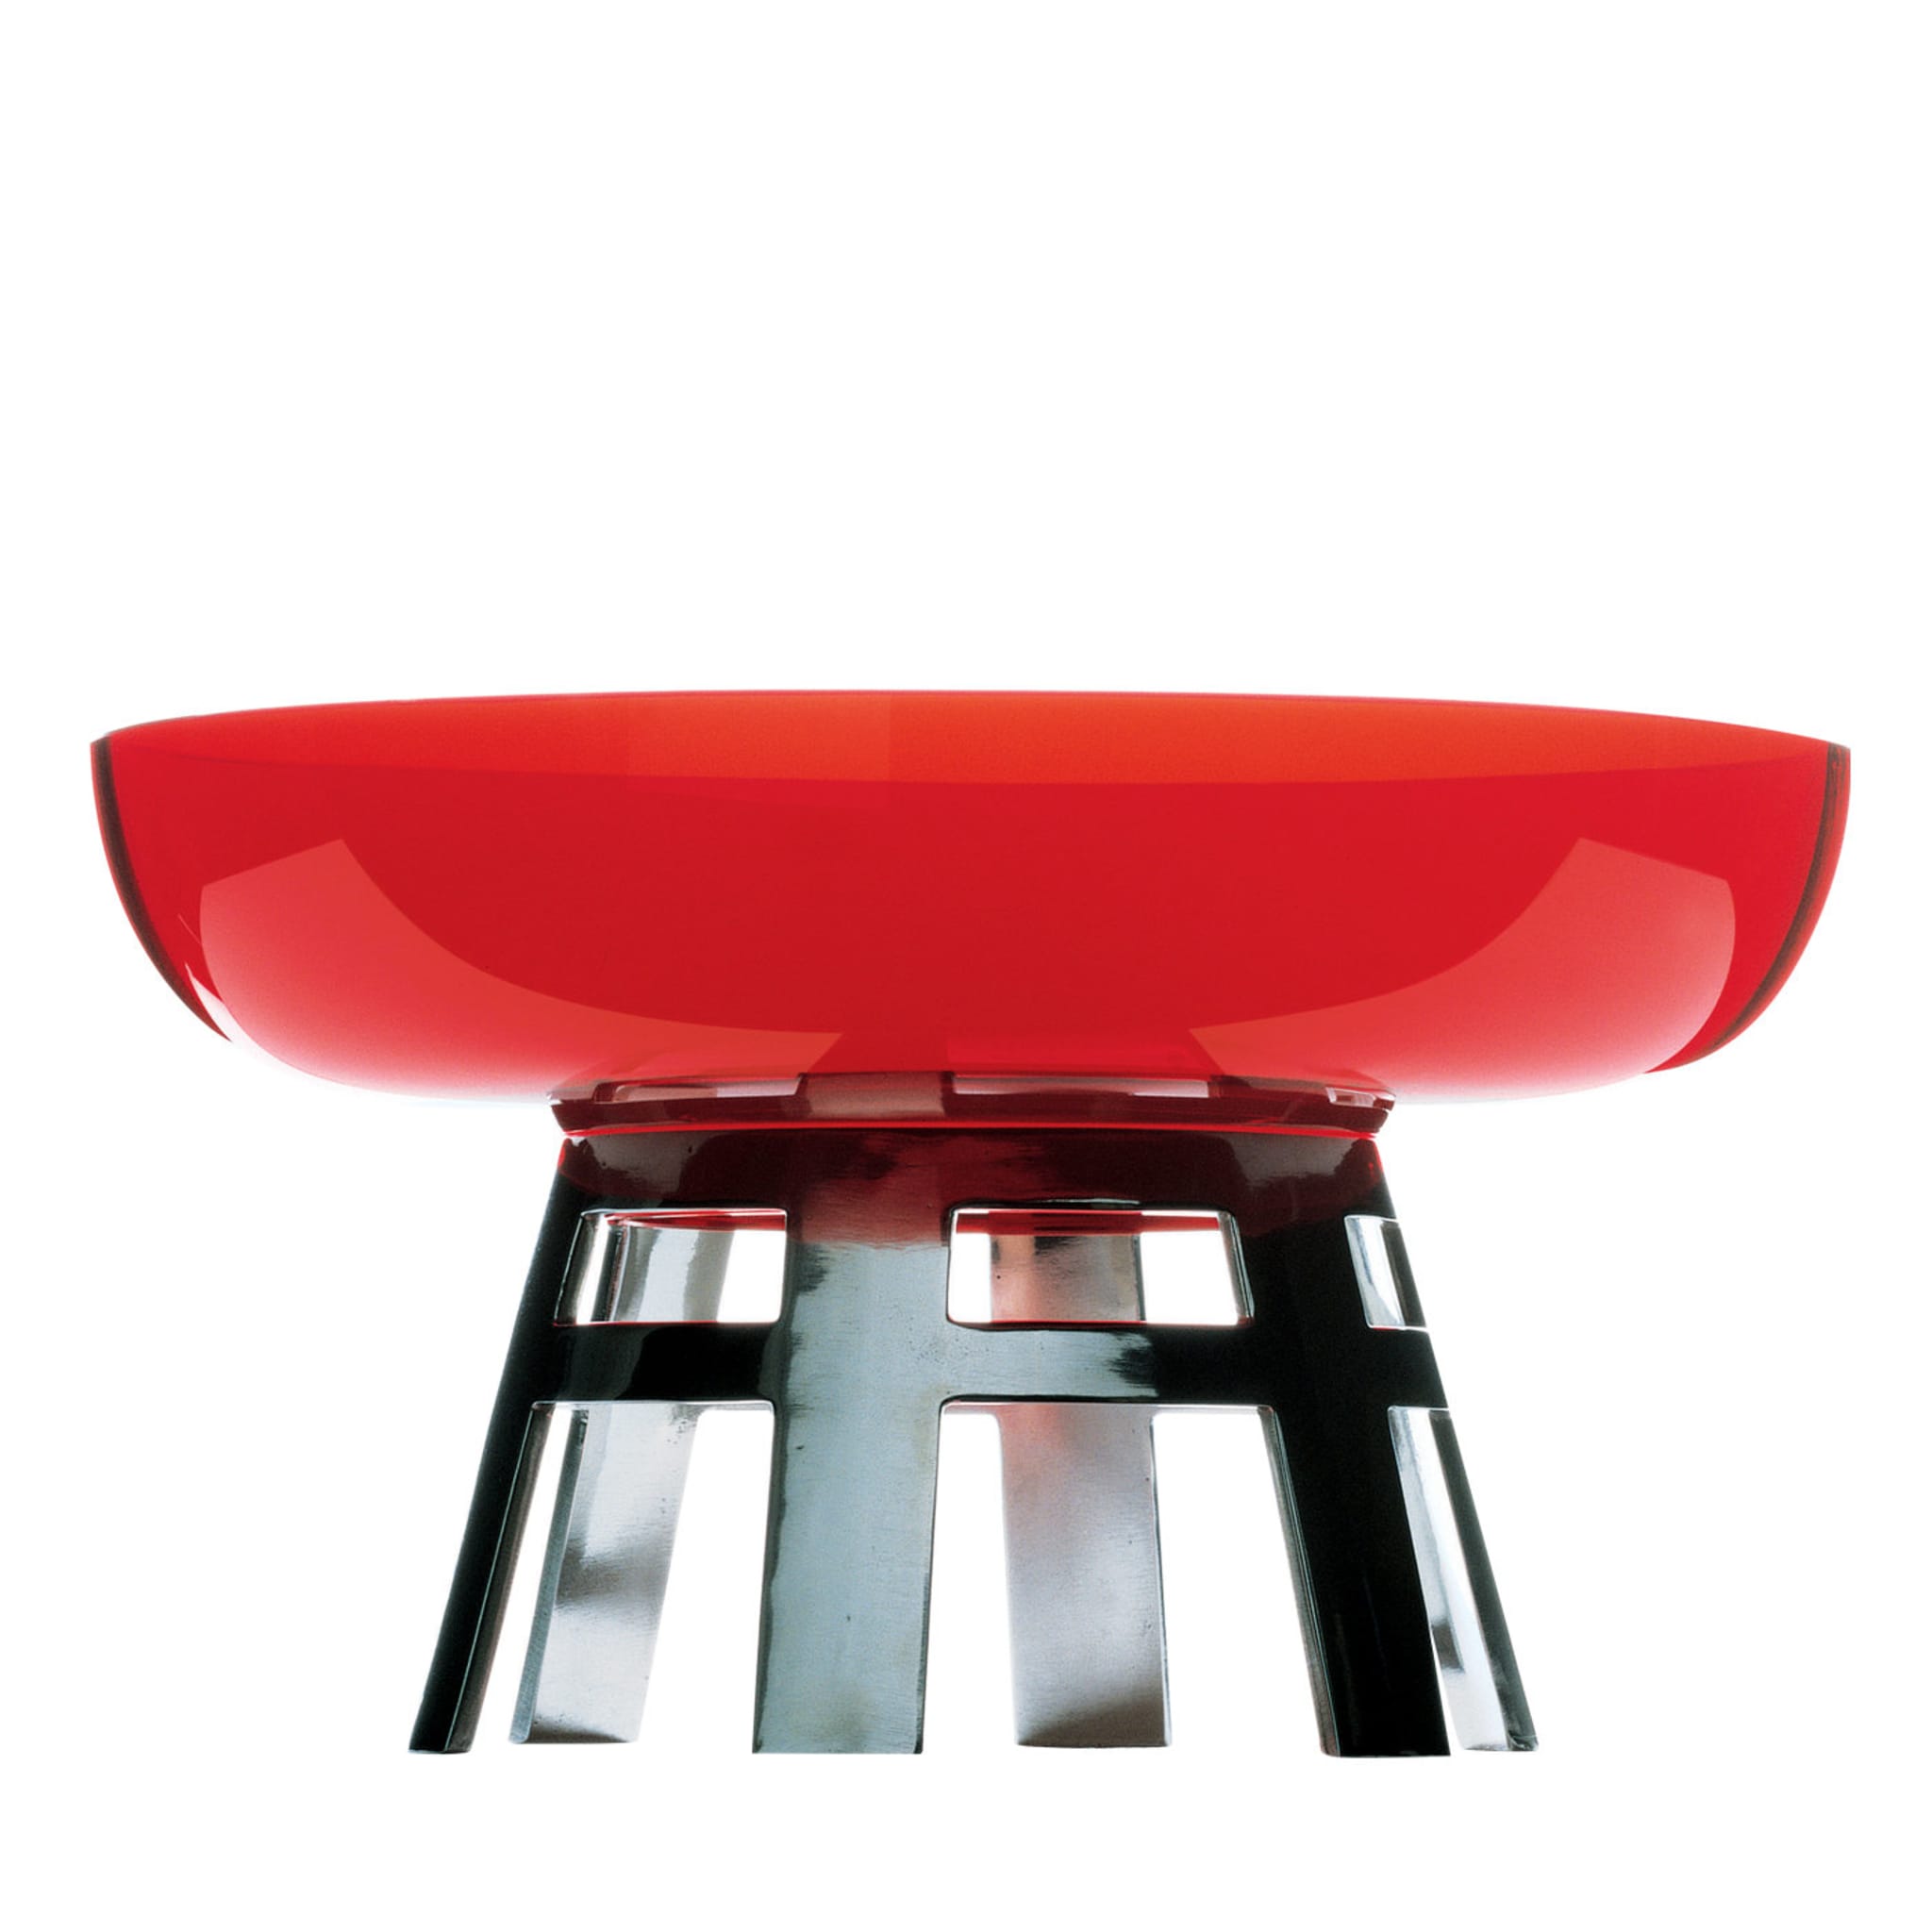 Runder Tisch, limitierte Auflage, roter Tafelaufsatz von Ettore Sottsass - Hauptansicht